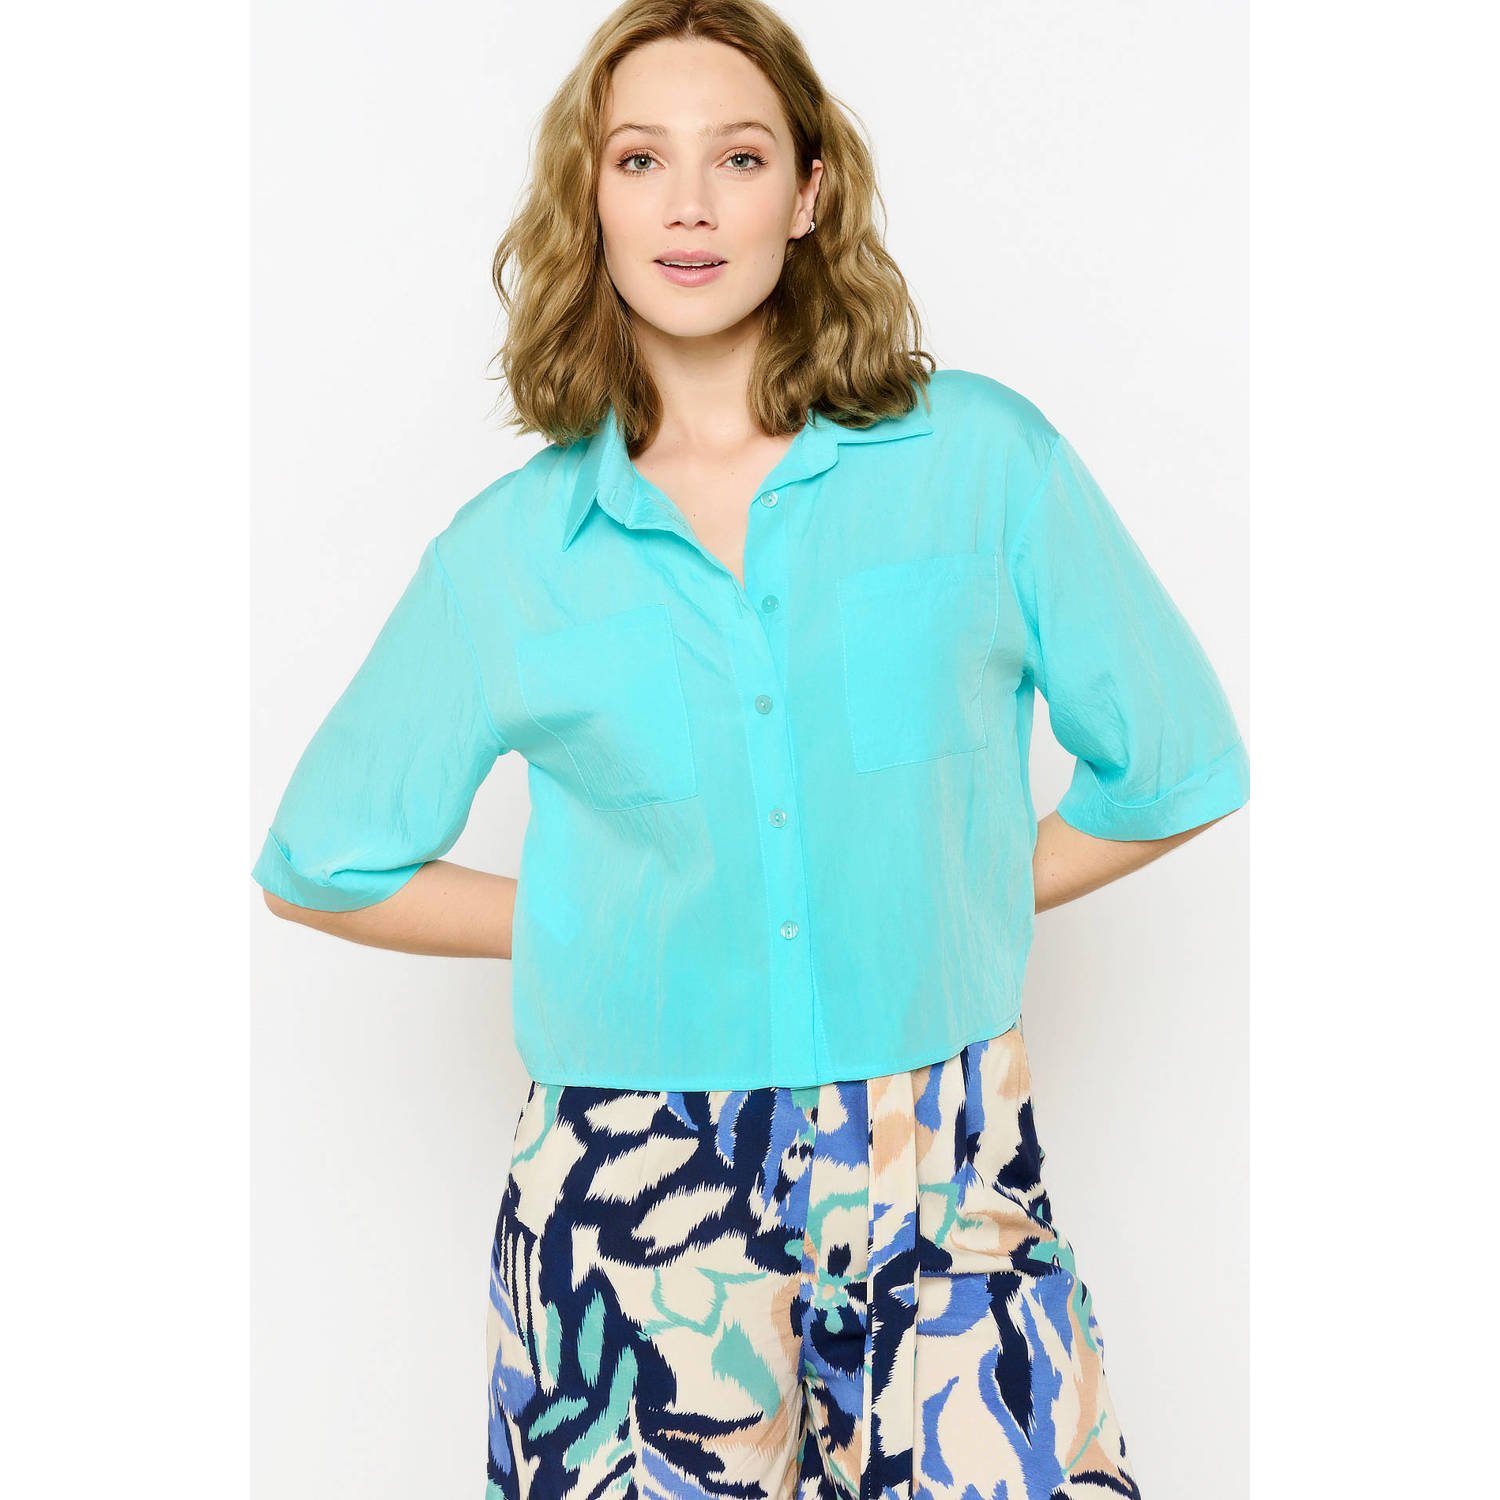 LOLALIZA blouse turquoise